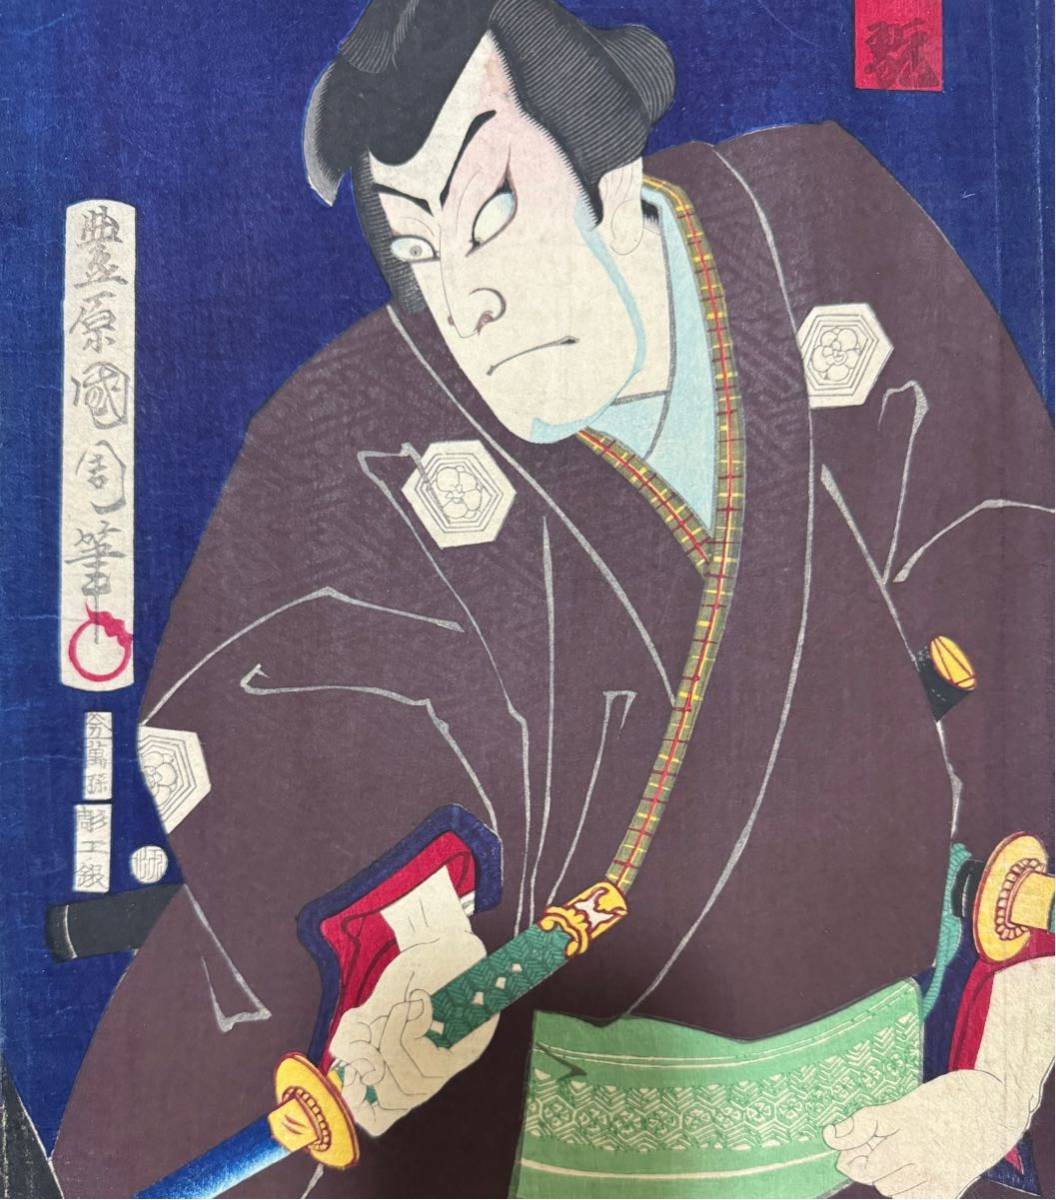  Meiji период / подлинный произведение .. страна . подлинный товар картина в жанре укиё гравюра на дереве сцена из кабуки изображение актеров газонная трава .... большой размер три листов .. обратная сторона удар .6